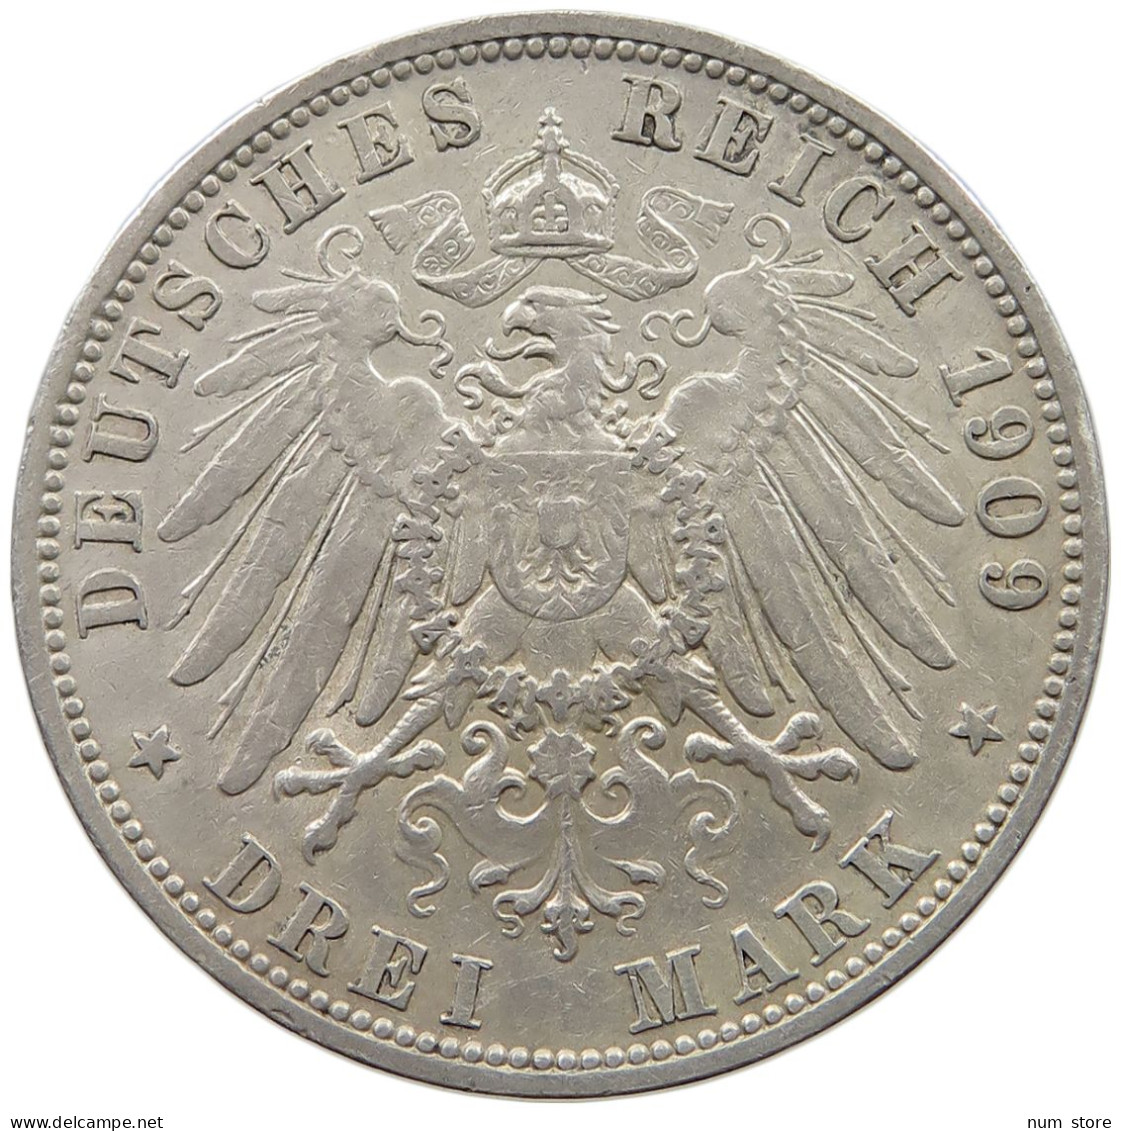 PREUSSEN 3 MARK 1909 WILHELM II. 1888-1918. #MA 020858 - 2, 3 & 5 Mark Silver